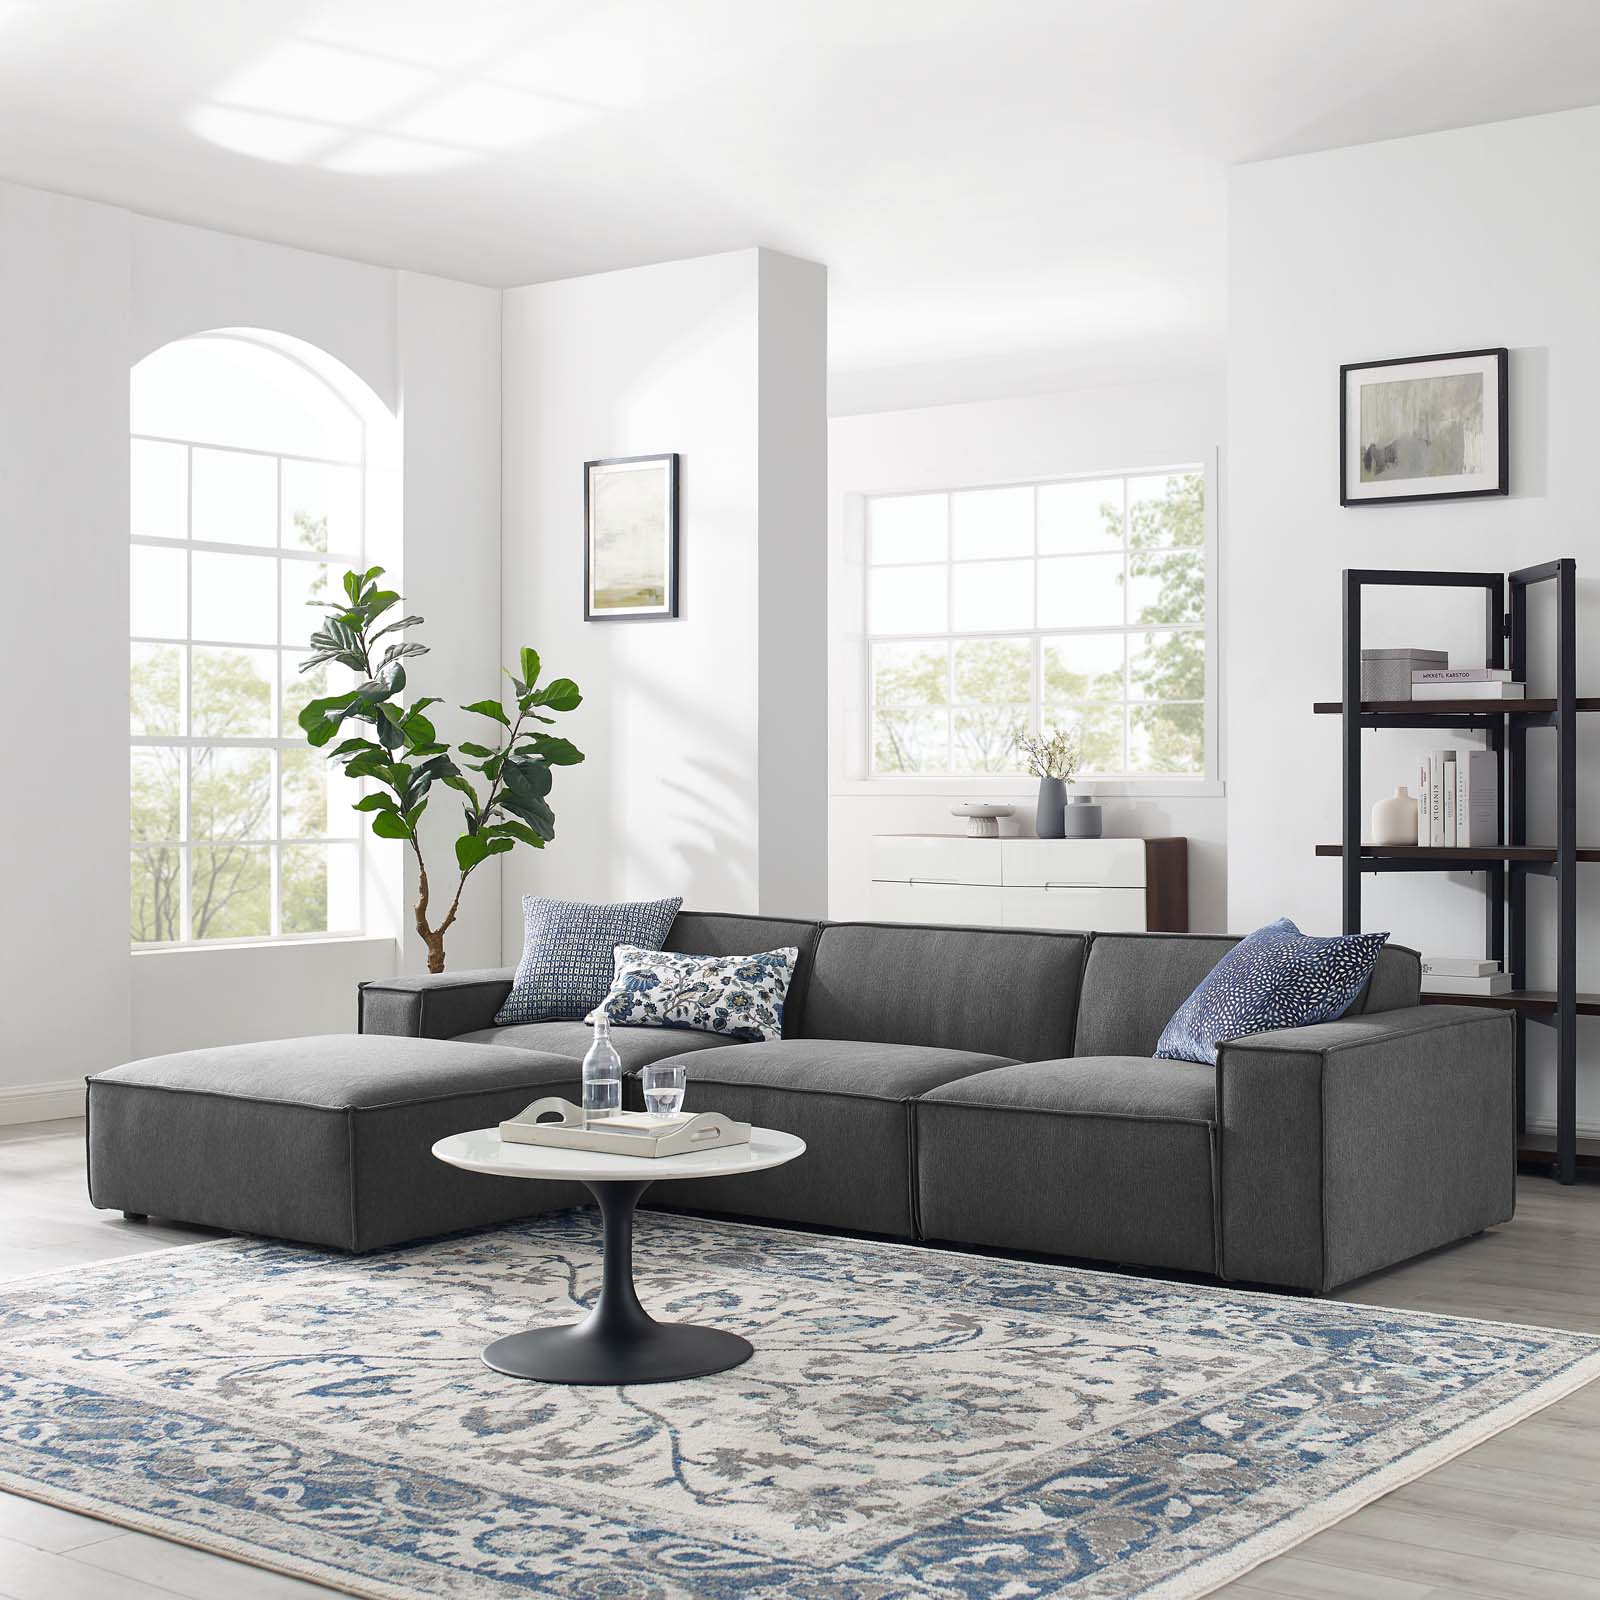 Đặc tính của sofa module cho phép bạn tùy chỉnh theo sở thích và không gian sàn có sẵn. Chiếc sofa màu xám sang trọng, êm ái cùng cấu hình thoải mái, rộng rãi cho gia chủ và nhiều vị khách cùng trò chuyện.